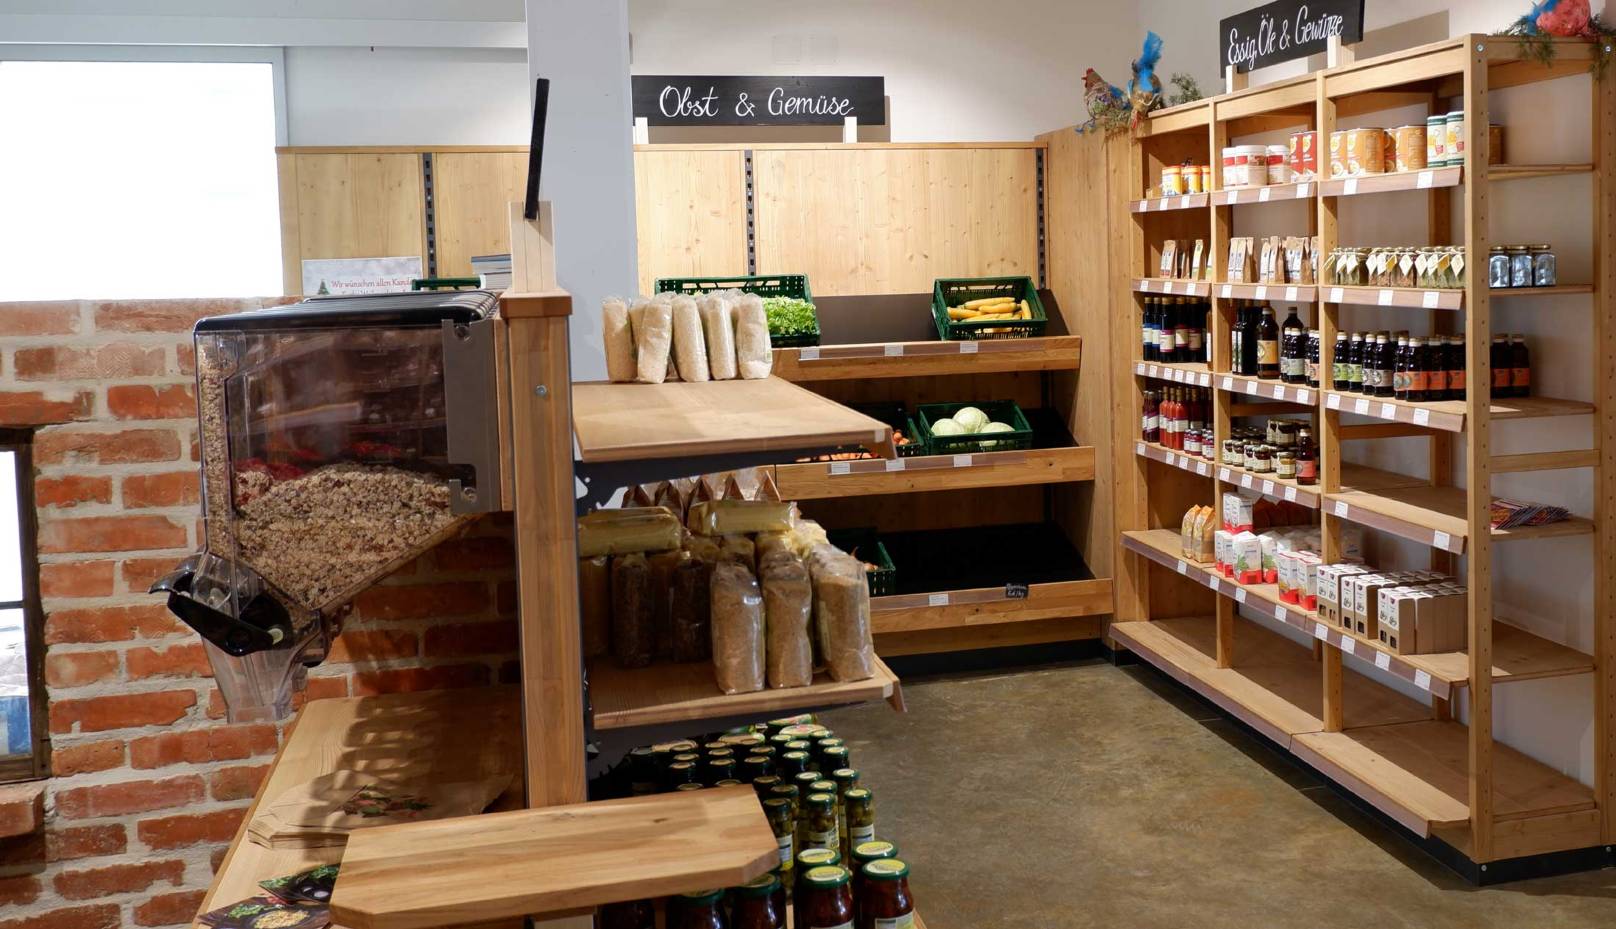 Regale aus Holz als Ladeneinrichtung für offene Waren, Wein und Obst Gemuese